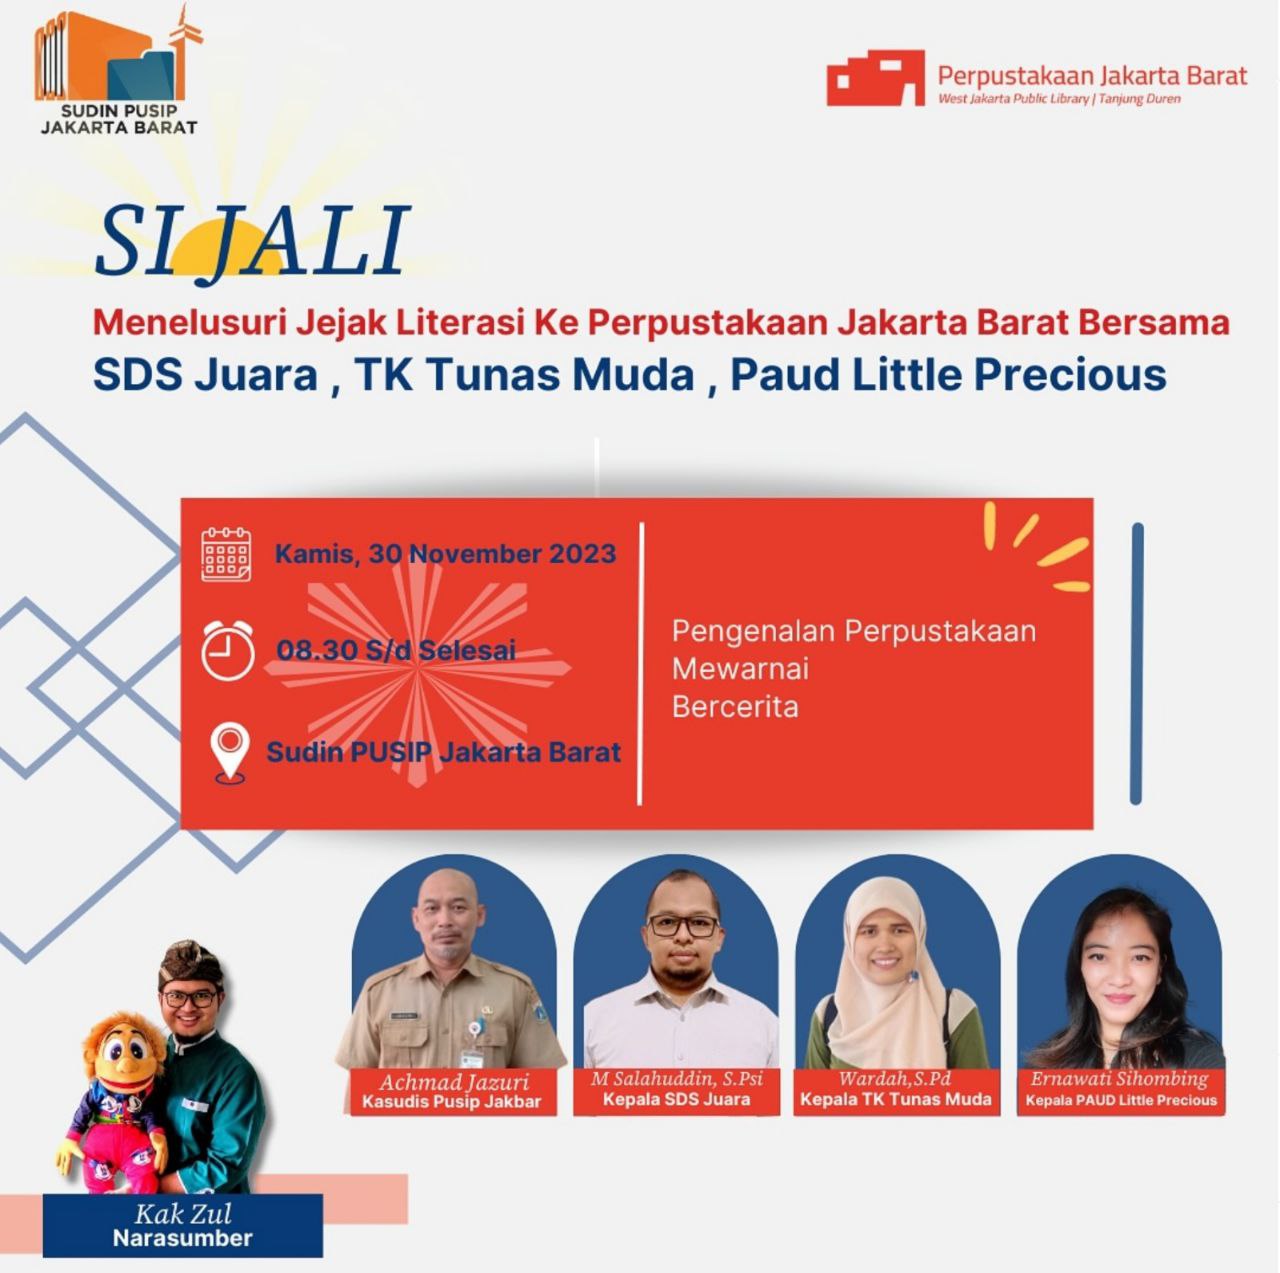 SI JALI Menelurusi Jejak Literasi Ke Perpustakaan Jakarta Barat Bersama SDS Juara, TK Mudas Muda, Paud Little Precious